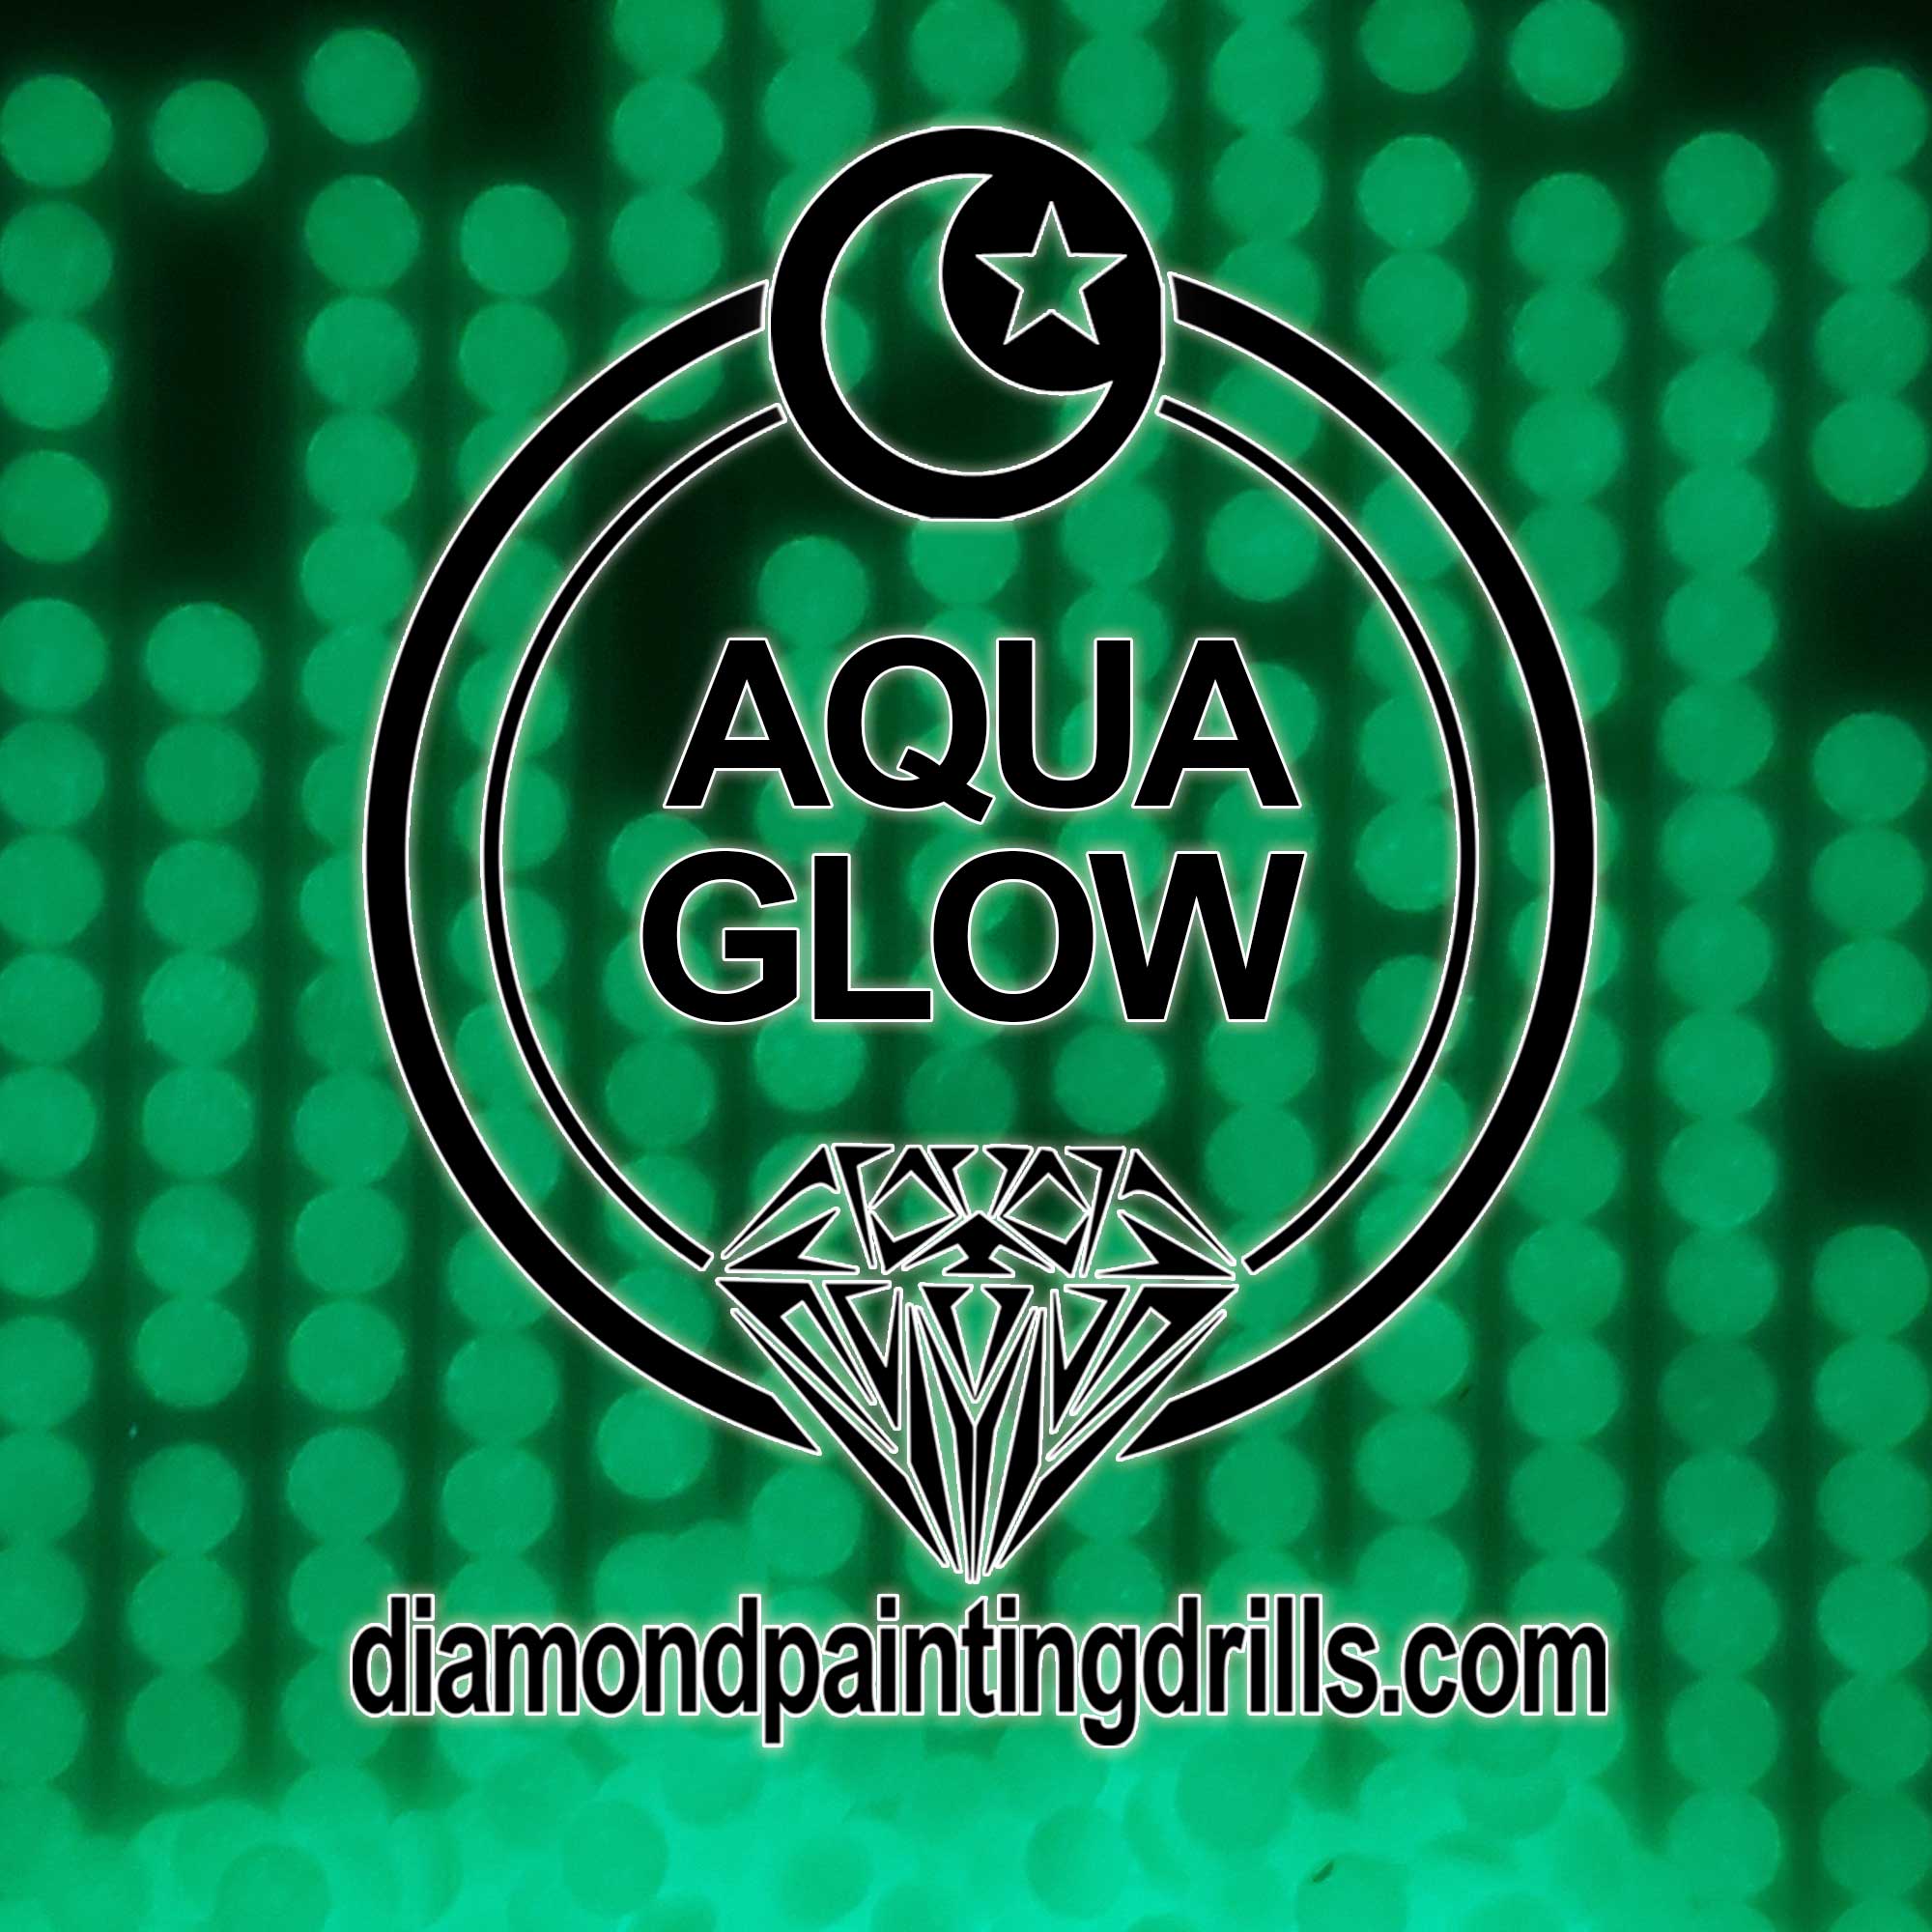 Aqua Round Glow in the Dark Diamond Painting Drills